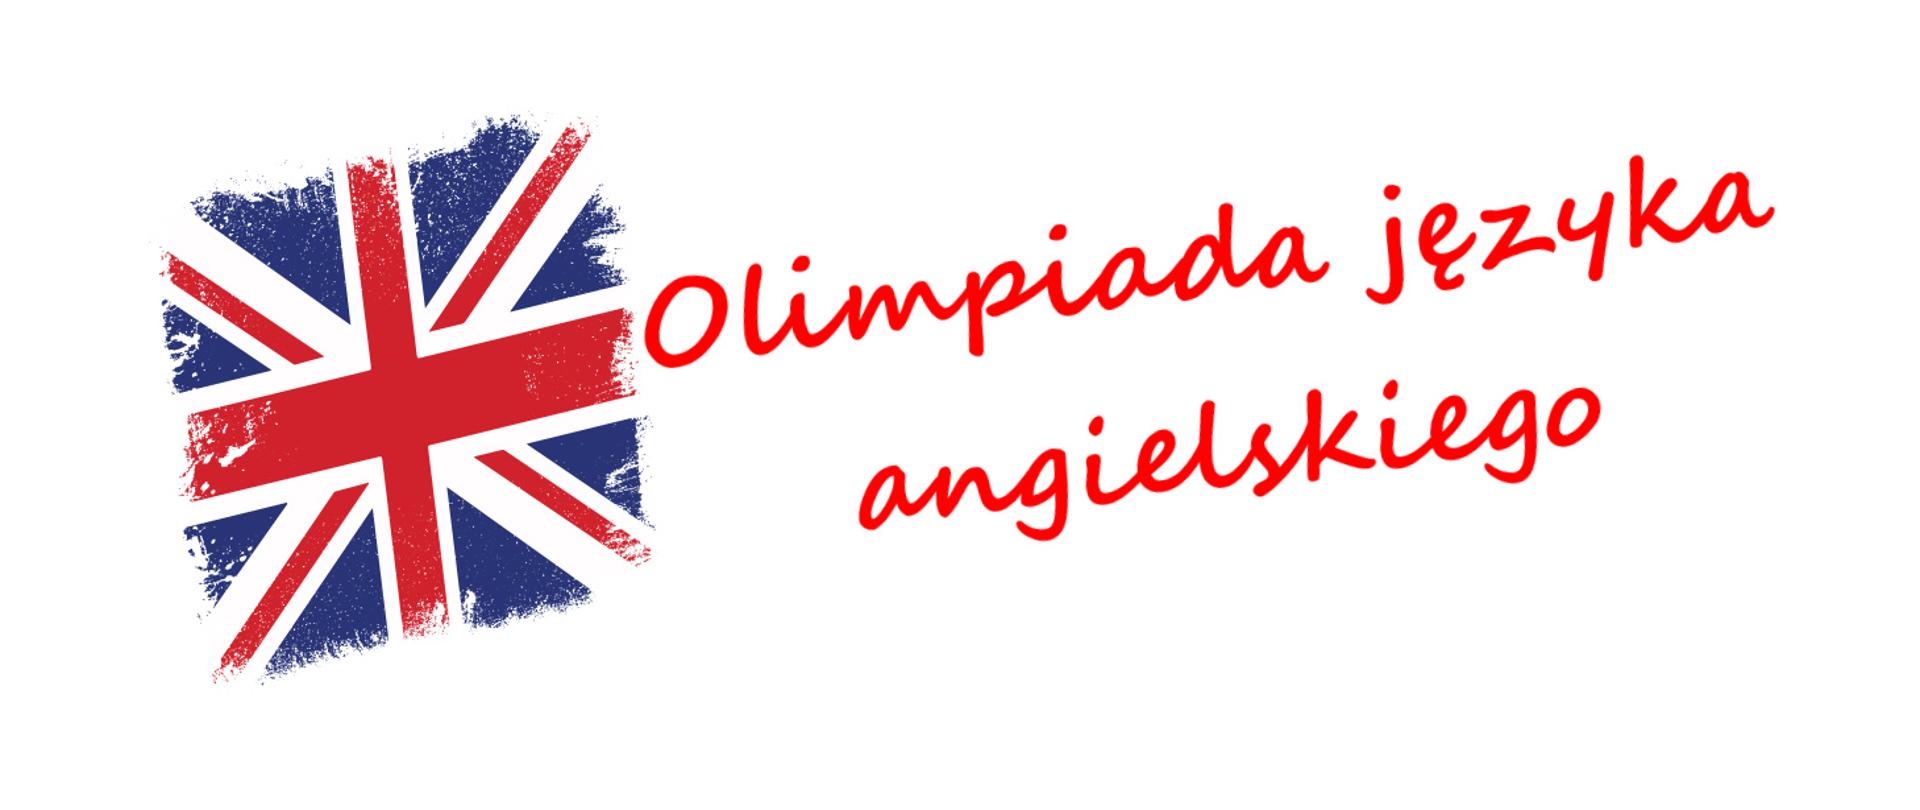 Grafika przedstawia angielską flagę z napisem "Olimpiada języka angielskiego" z prawej strony